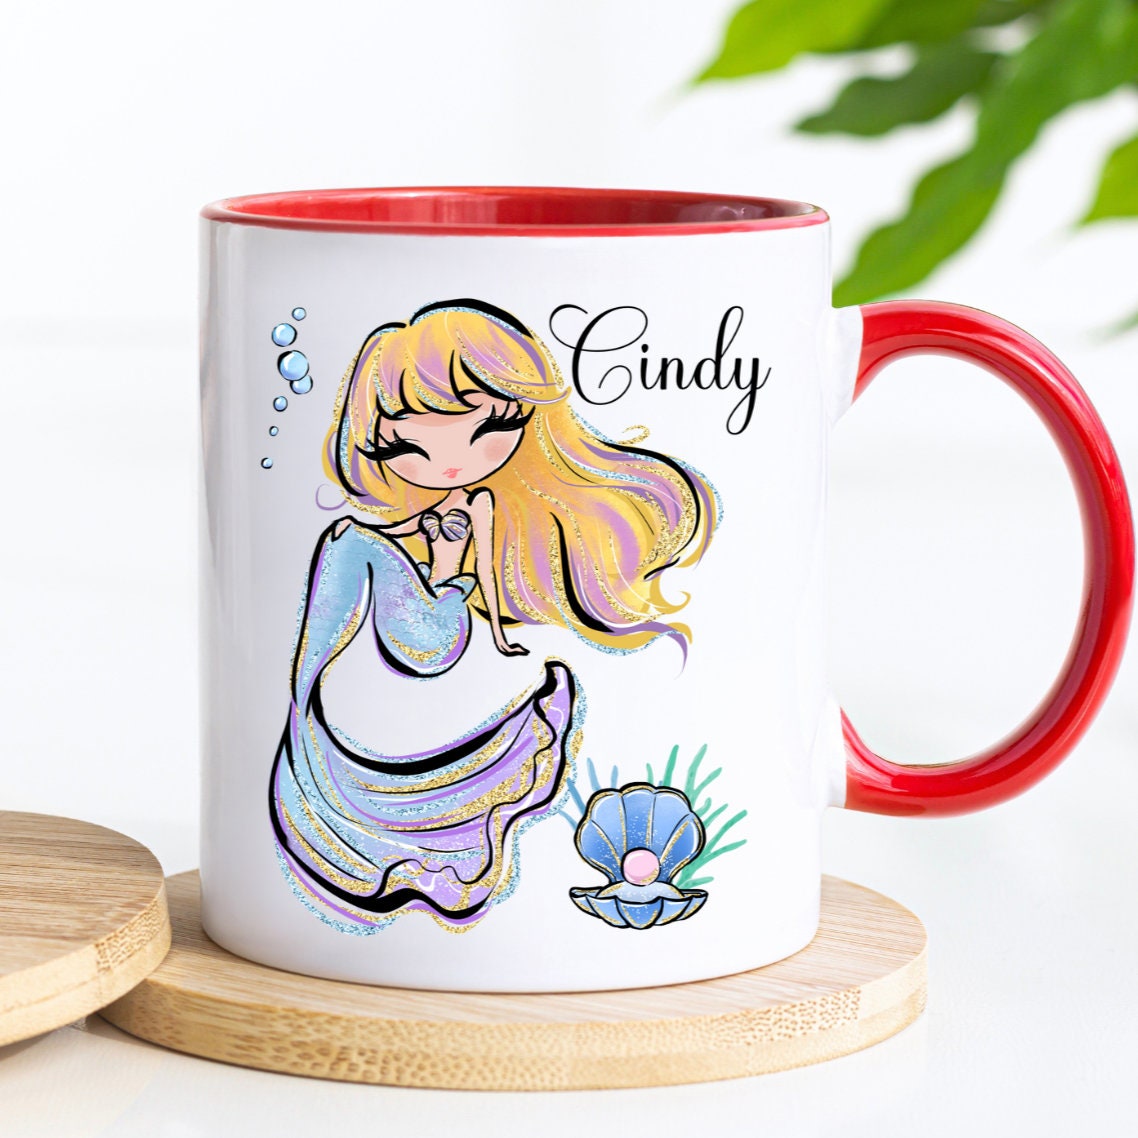 Mermaid Mug Mermaid Coffee Cup Personalized Mermaid Gift for